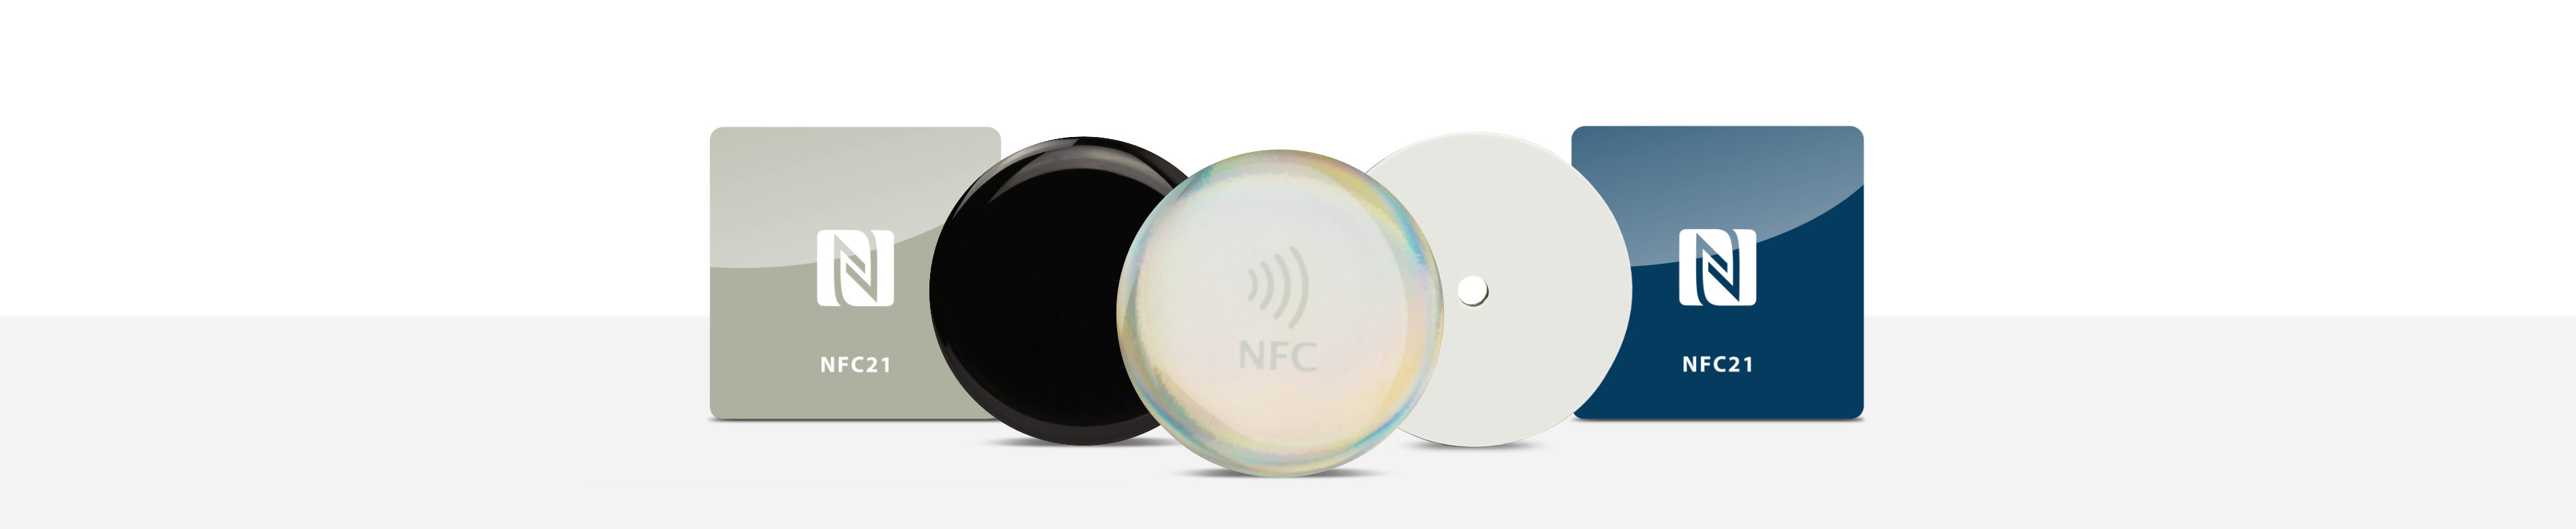 NFC On-Metal